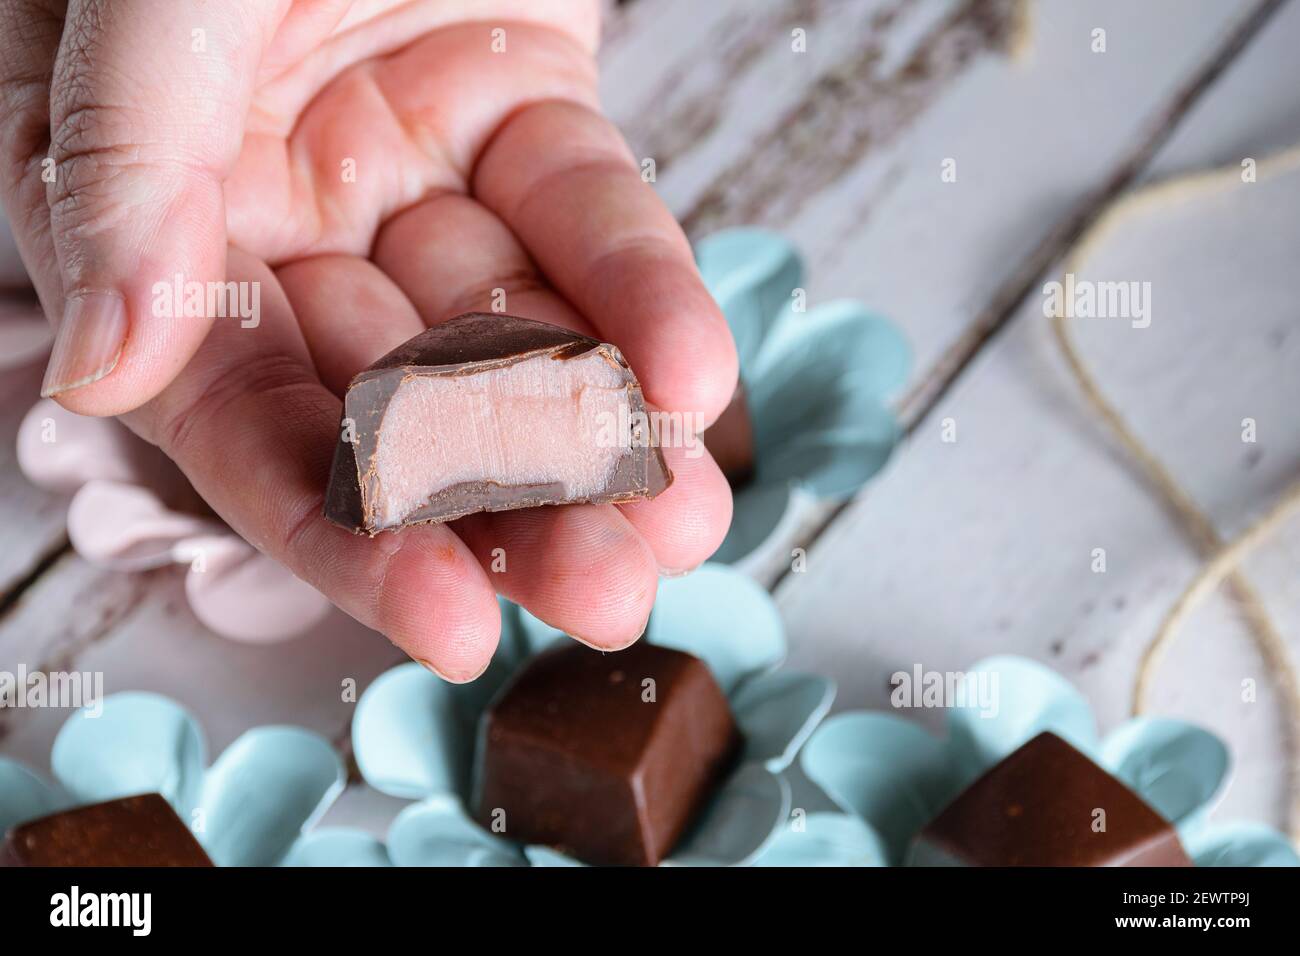 Mano sosteniendo un bonbón de chocolate cortado a la mitad, mostrando relleno de ganache rosa. Foto de stock